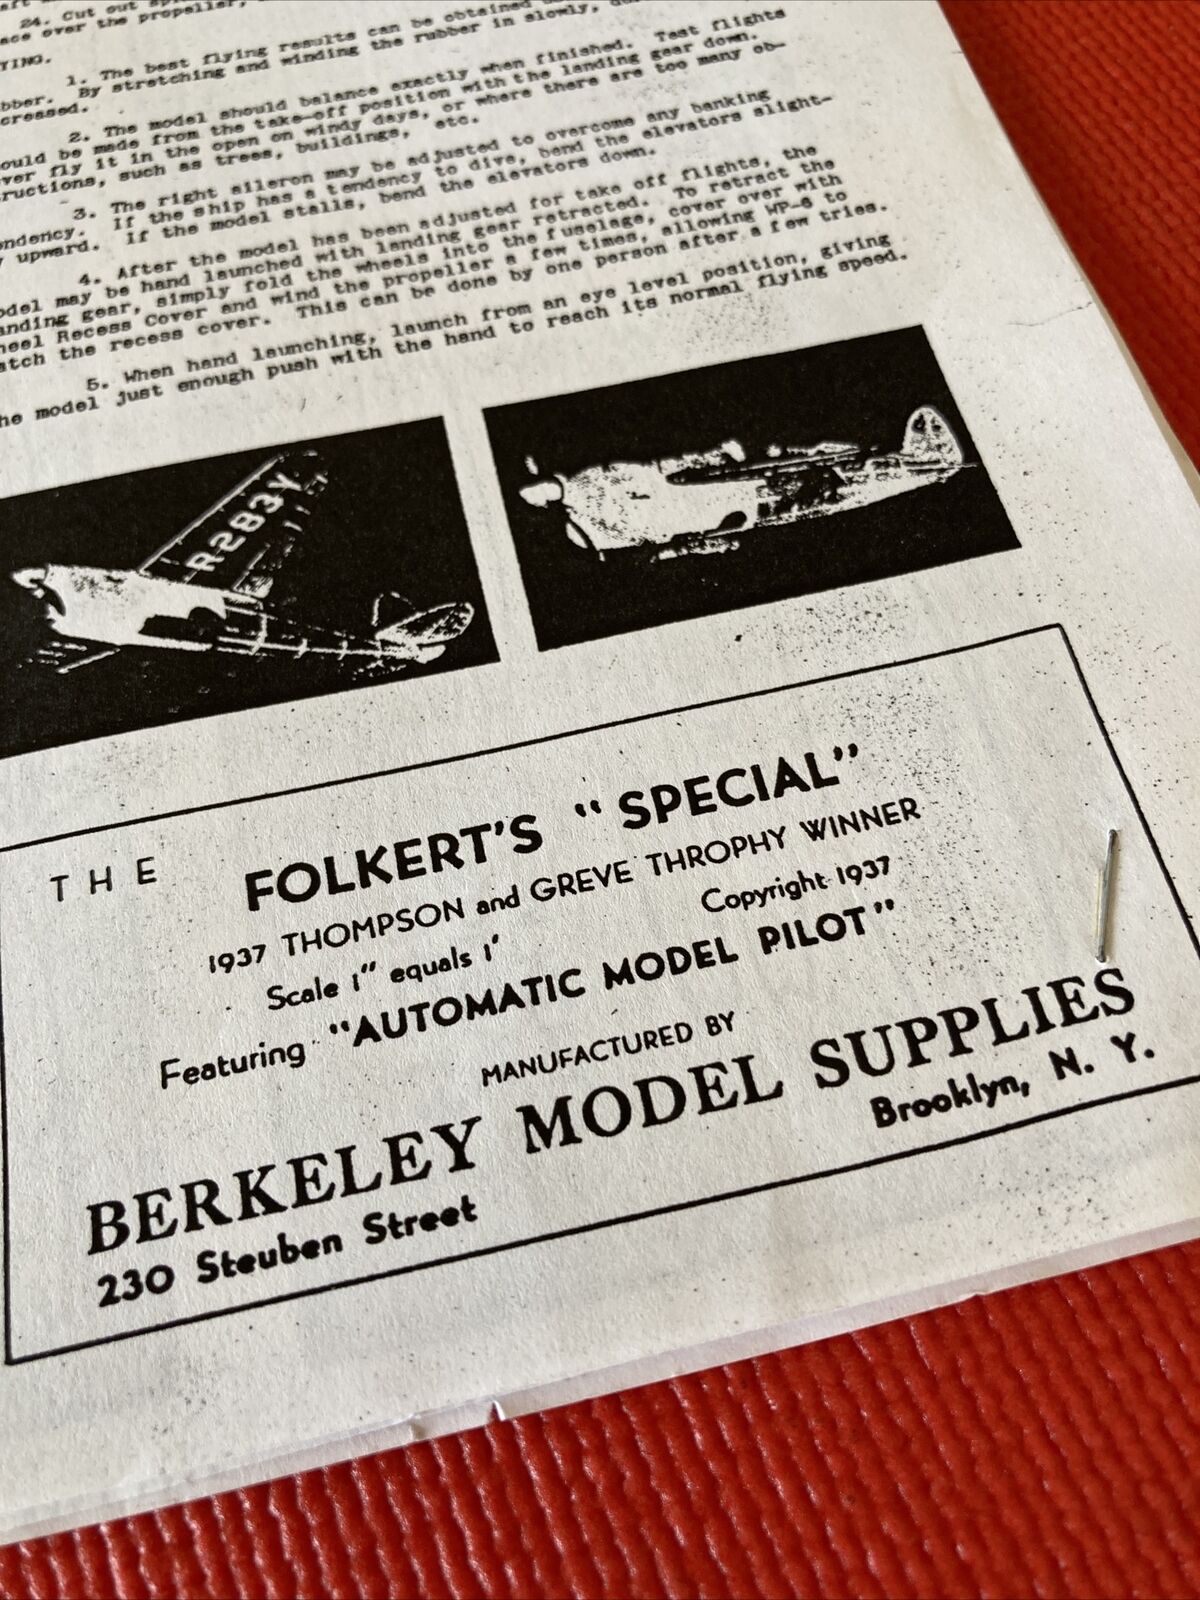 Berkeley  Folkert’s “SPECIAL”.  Scale 1.     Free FOCKE WULF STOSSER  FW58